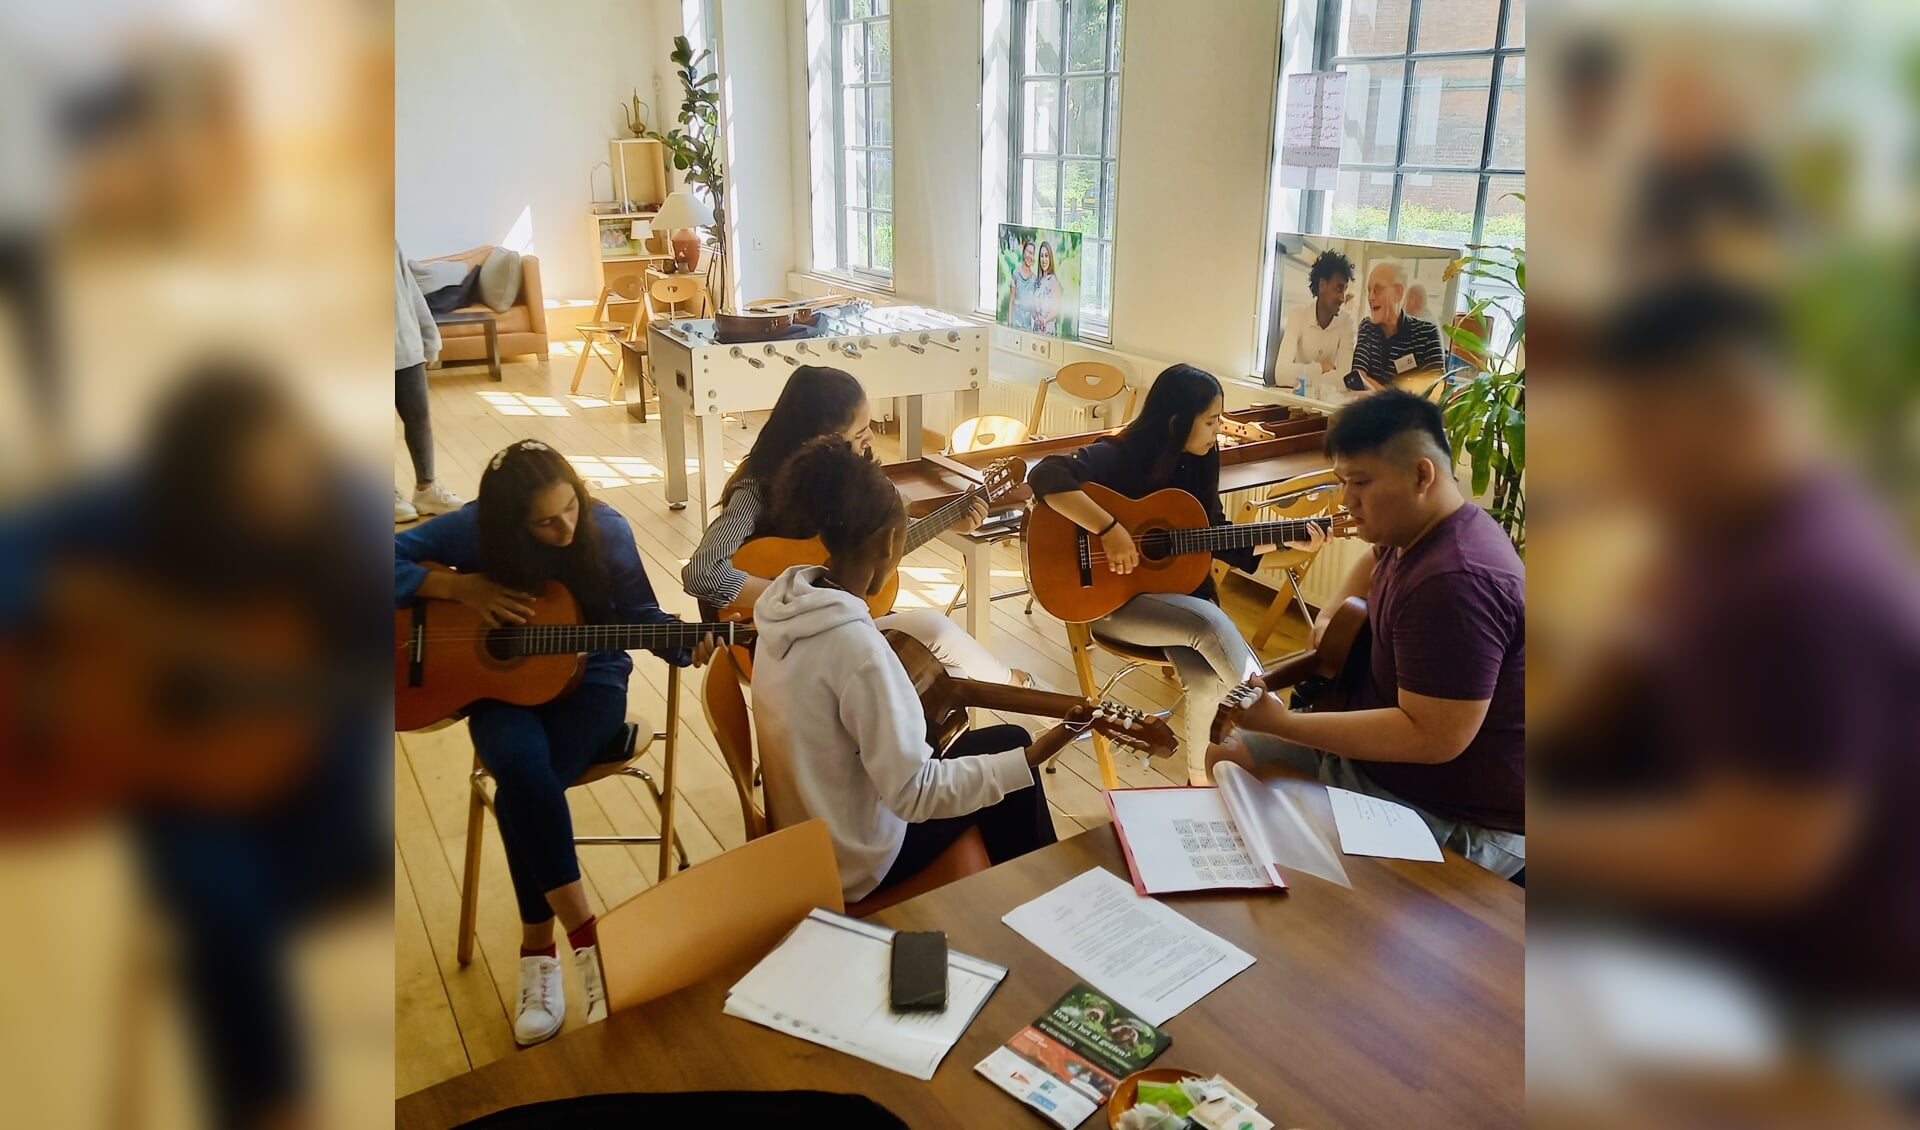 Grenzeloos Muziek geeft mensen die gehuisvest zijn in een AZC de mogelijkheid om een muziekinstrument te leren bespelen of te leren zingen. Foto: Karel Overbeek